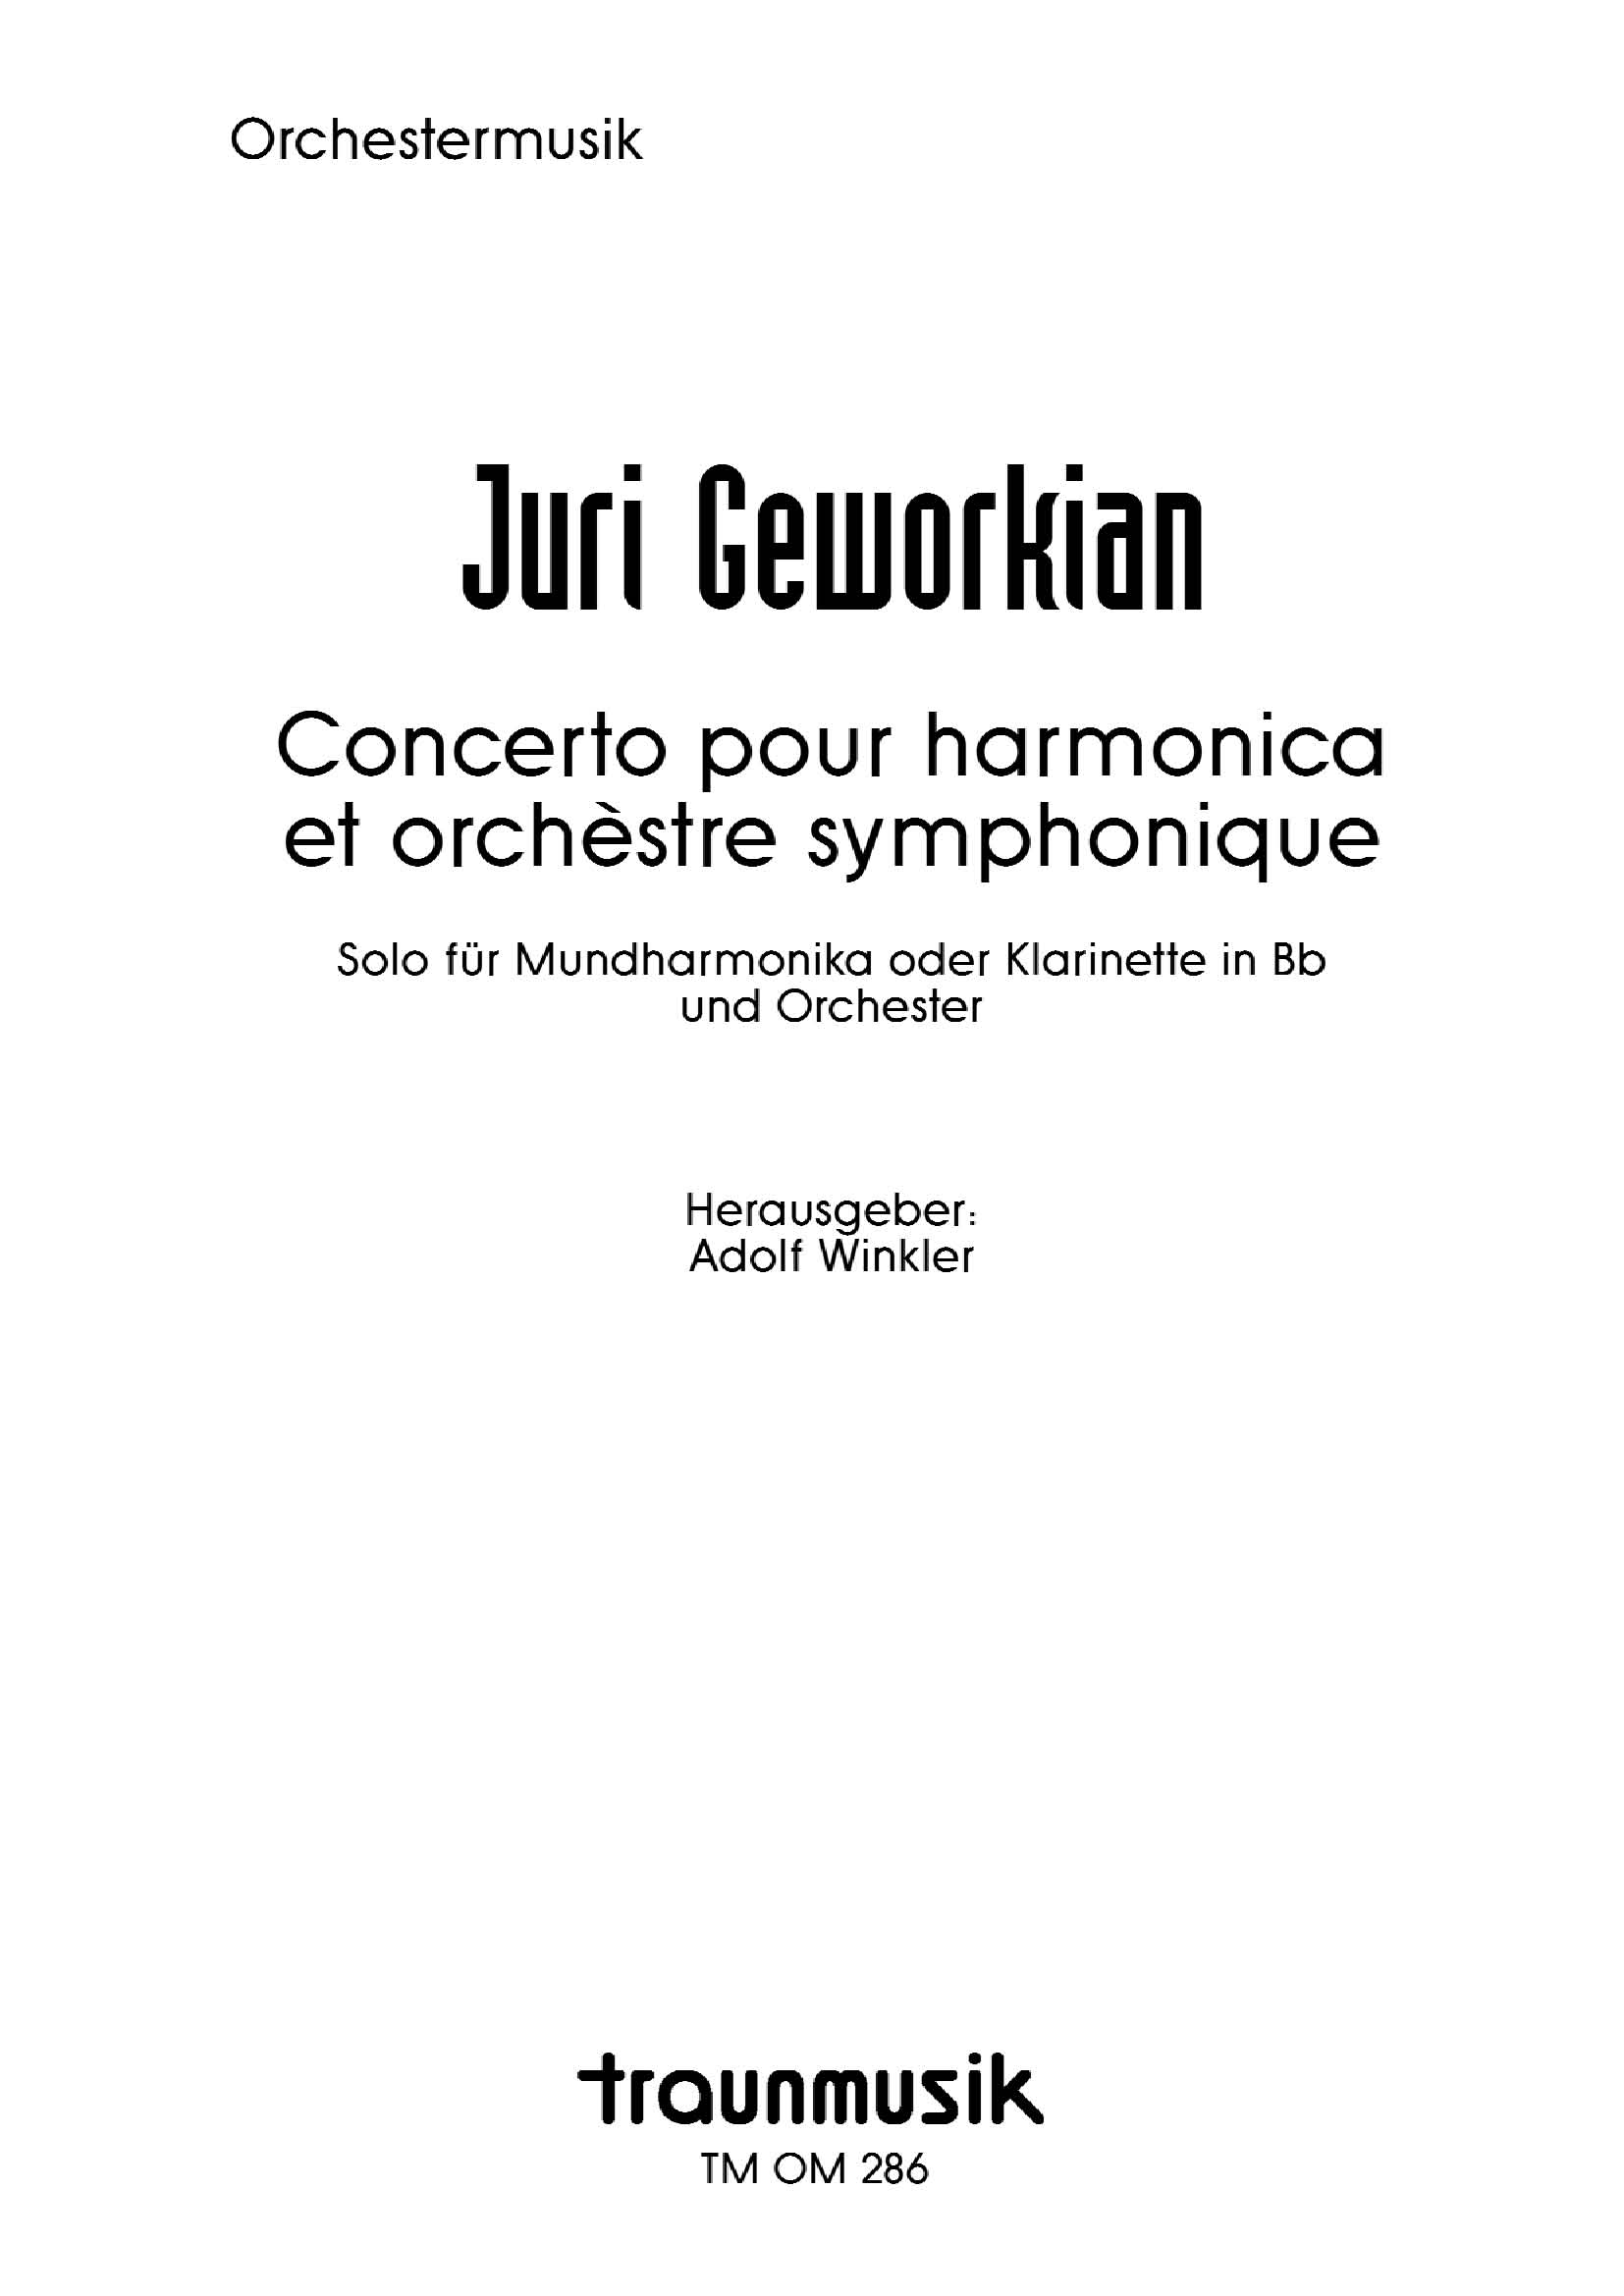 Konzert für Mundharmonika und Orchester / J. Geworkian